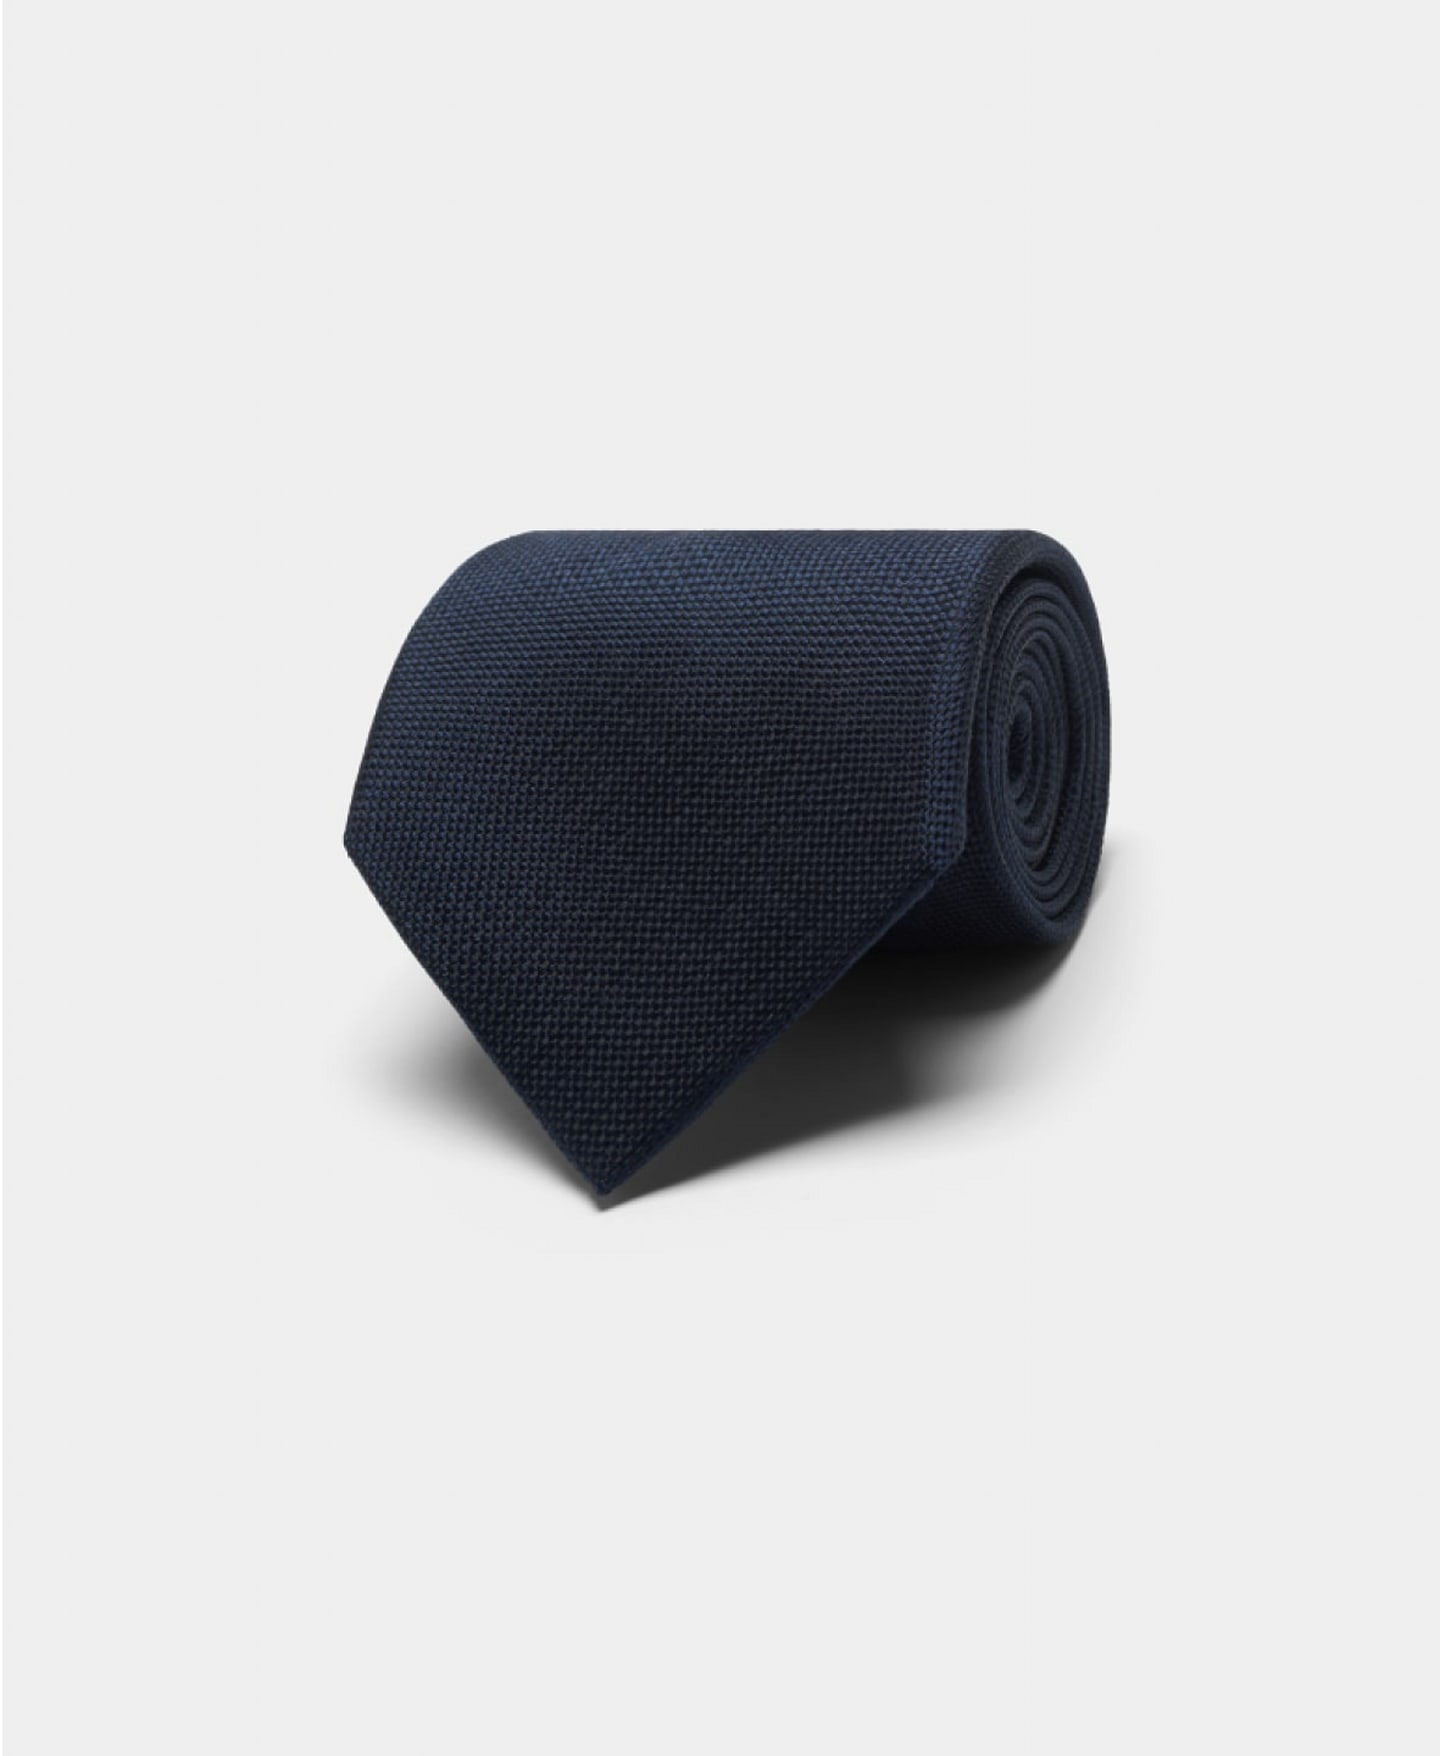 Granatowy krawat z czystego jedwabiu.